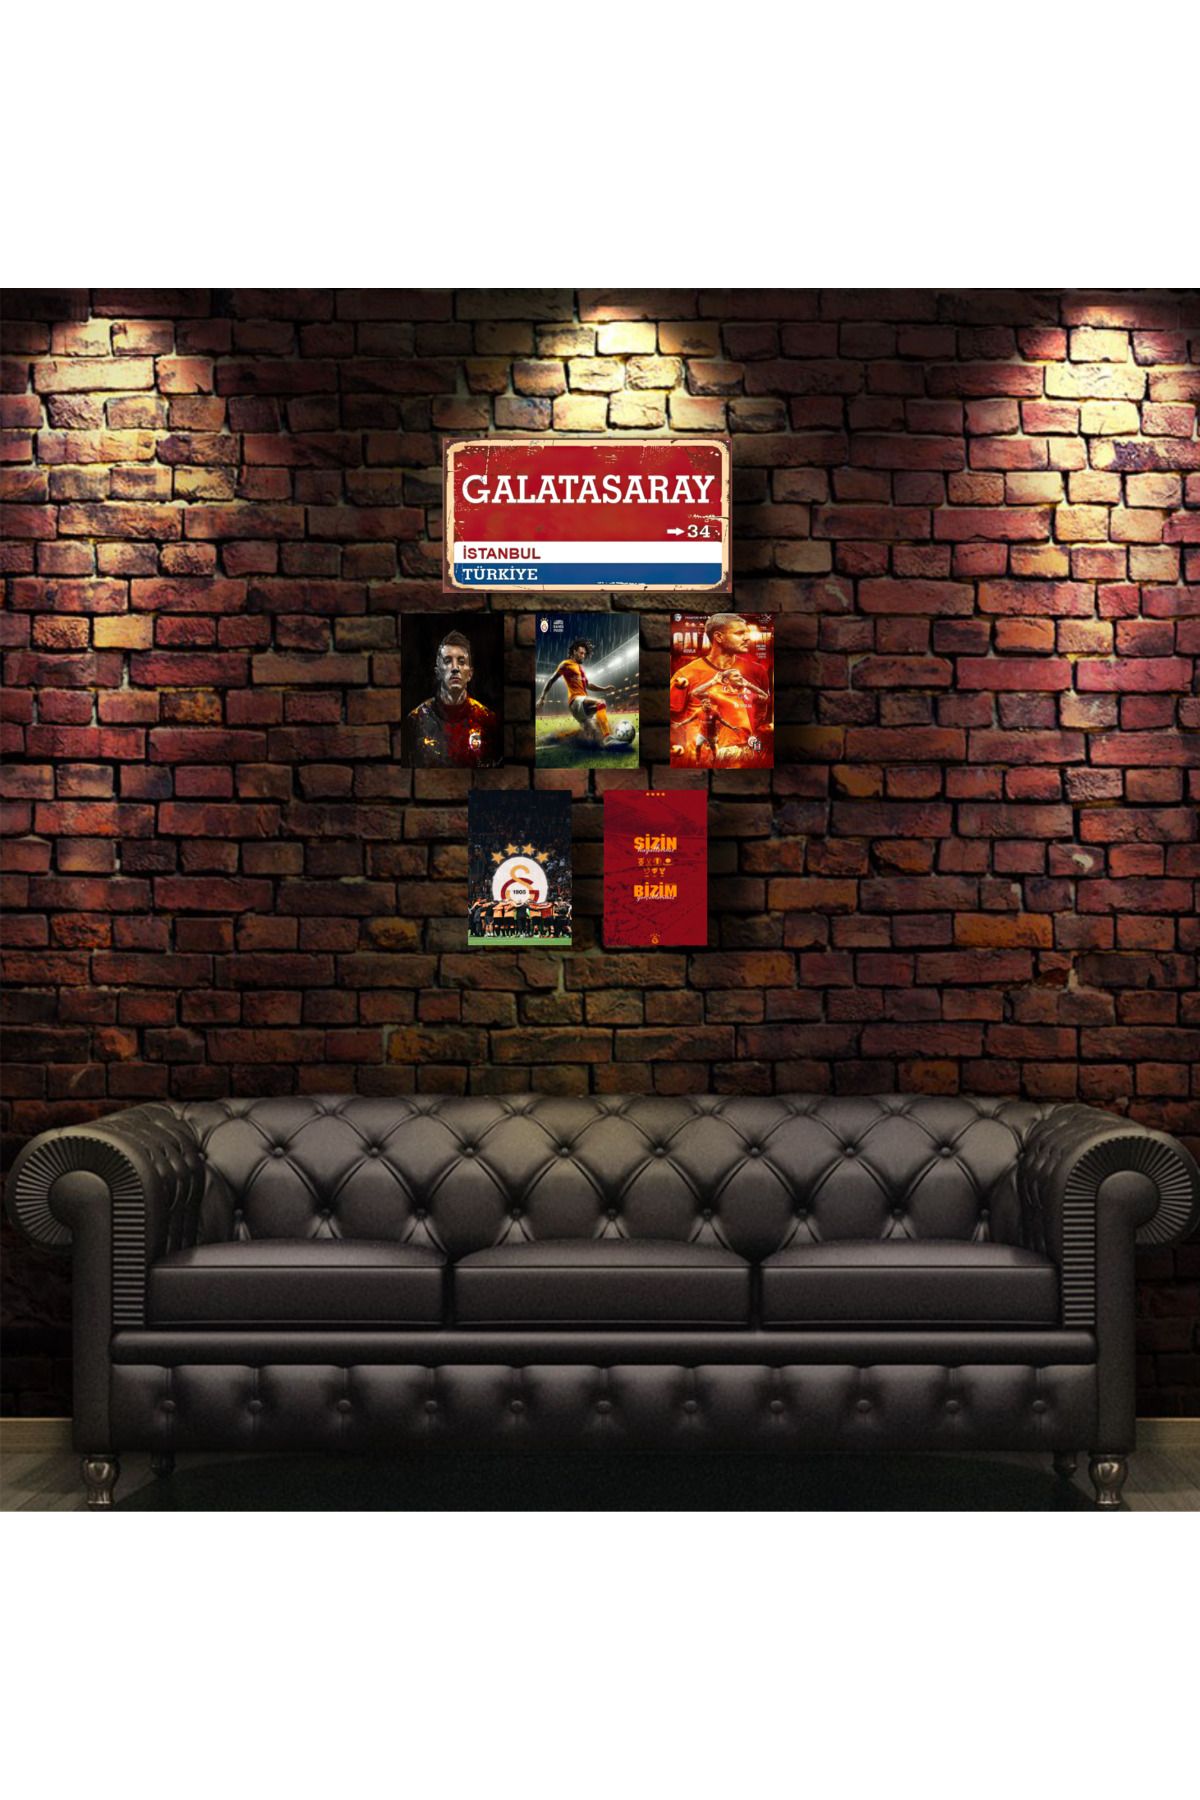 posterr "Galatasaray" Altılı Dekota Duvar Posteri 1x(20*30'cm) 5x(10*15'cm)